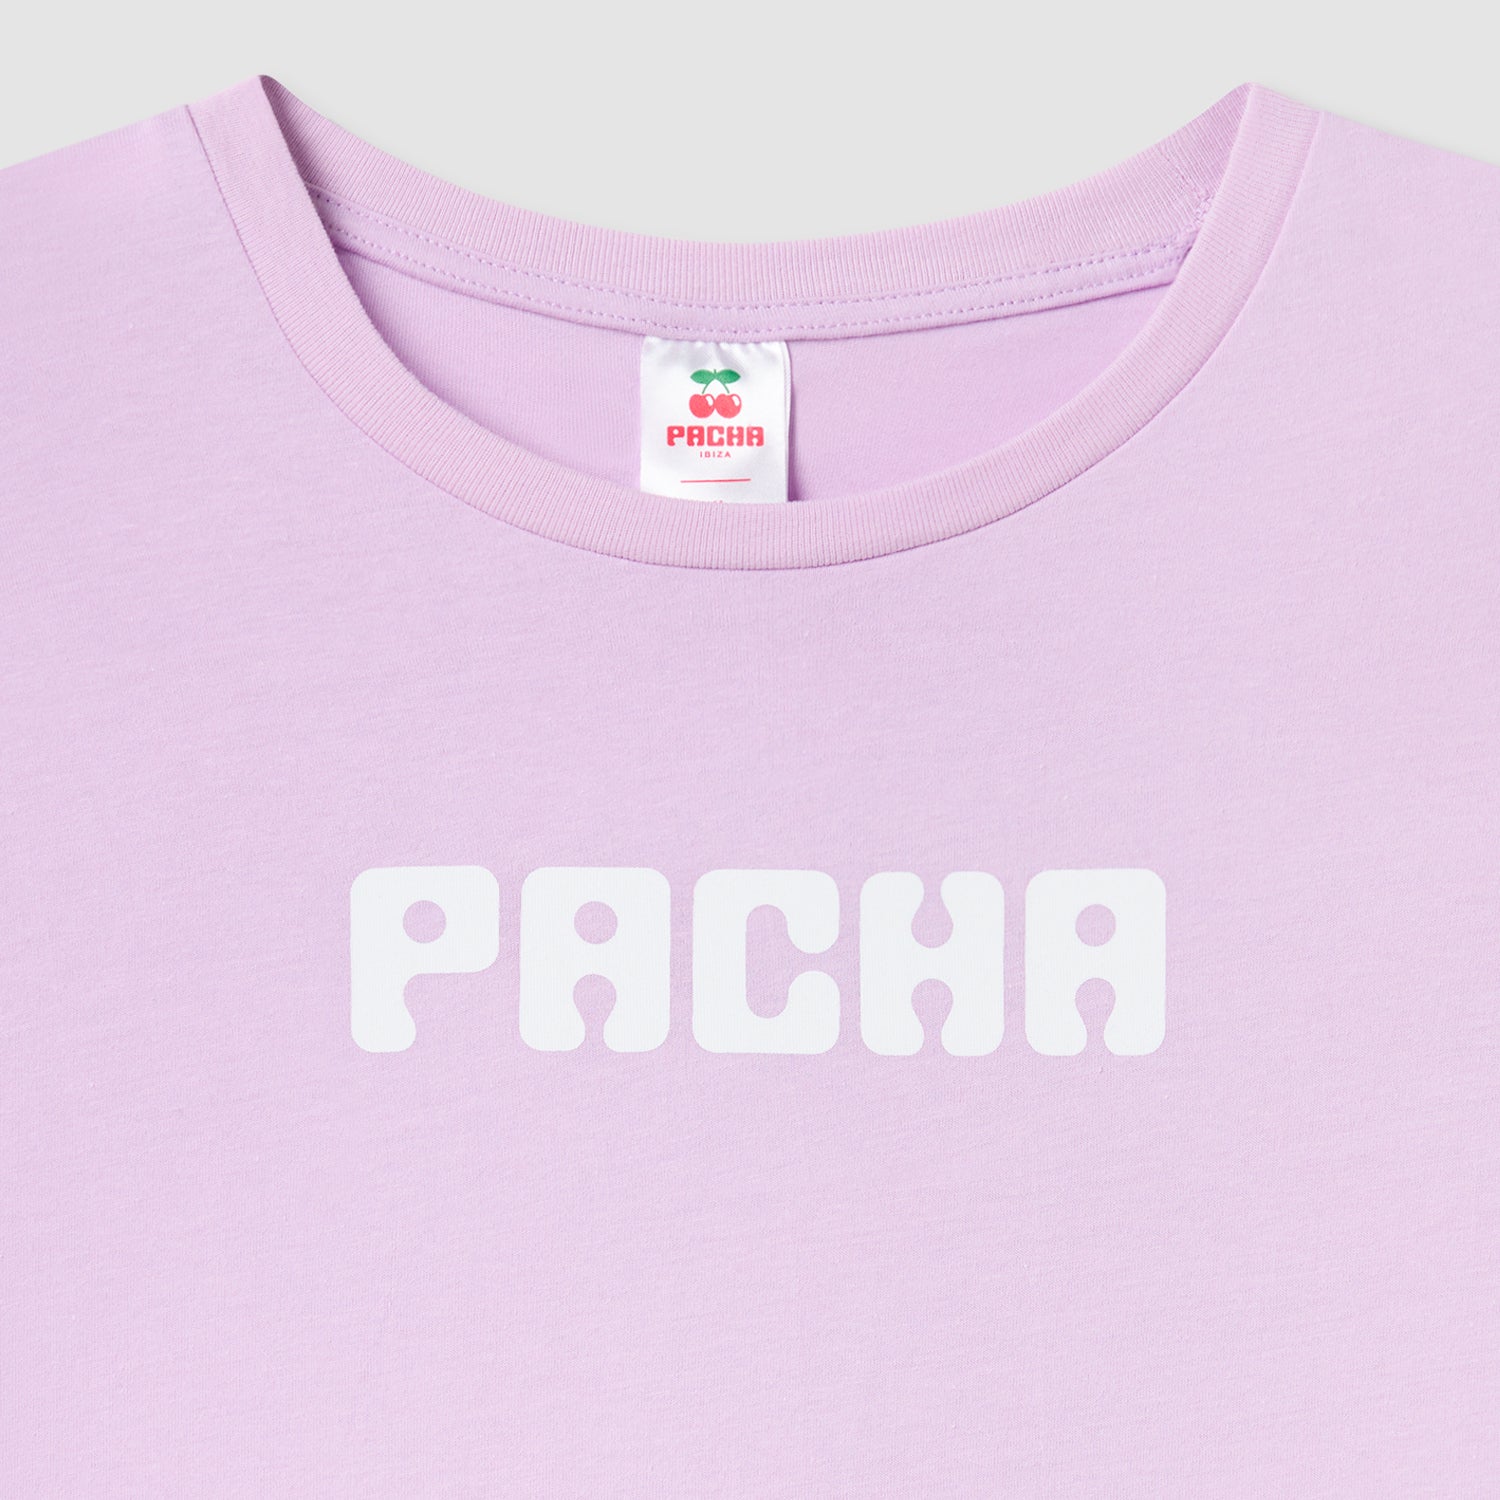 T-Shirt mit Pacha-Buchstaben